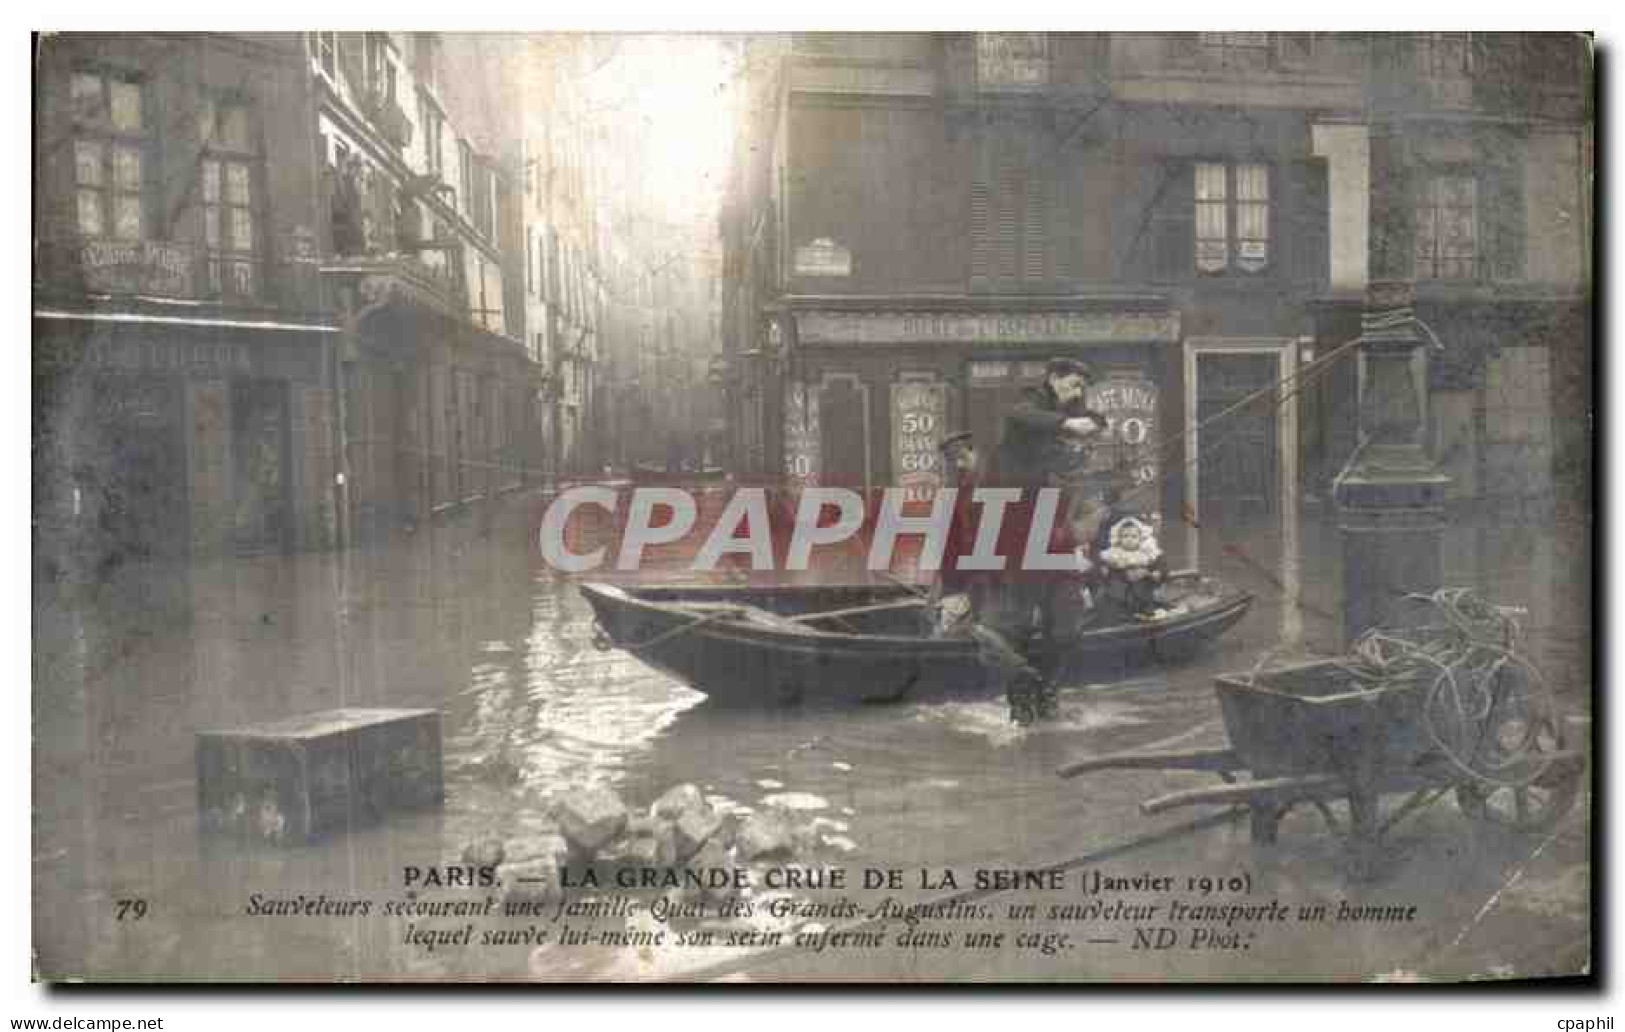 CPA Paris La Grande Crue De La Seine Sauveteurs Secourant Une Famille Quai Des Grands Augustins  - Paris Flood, 1910